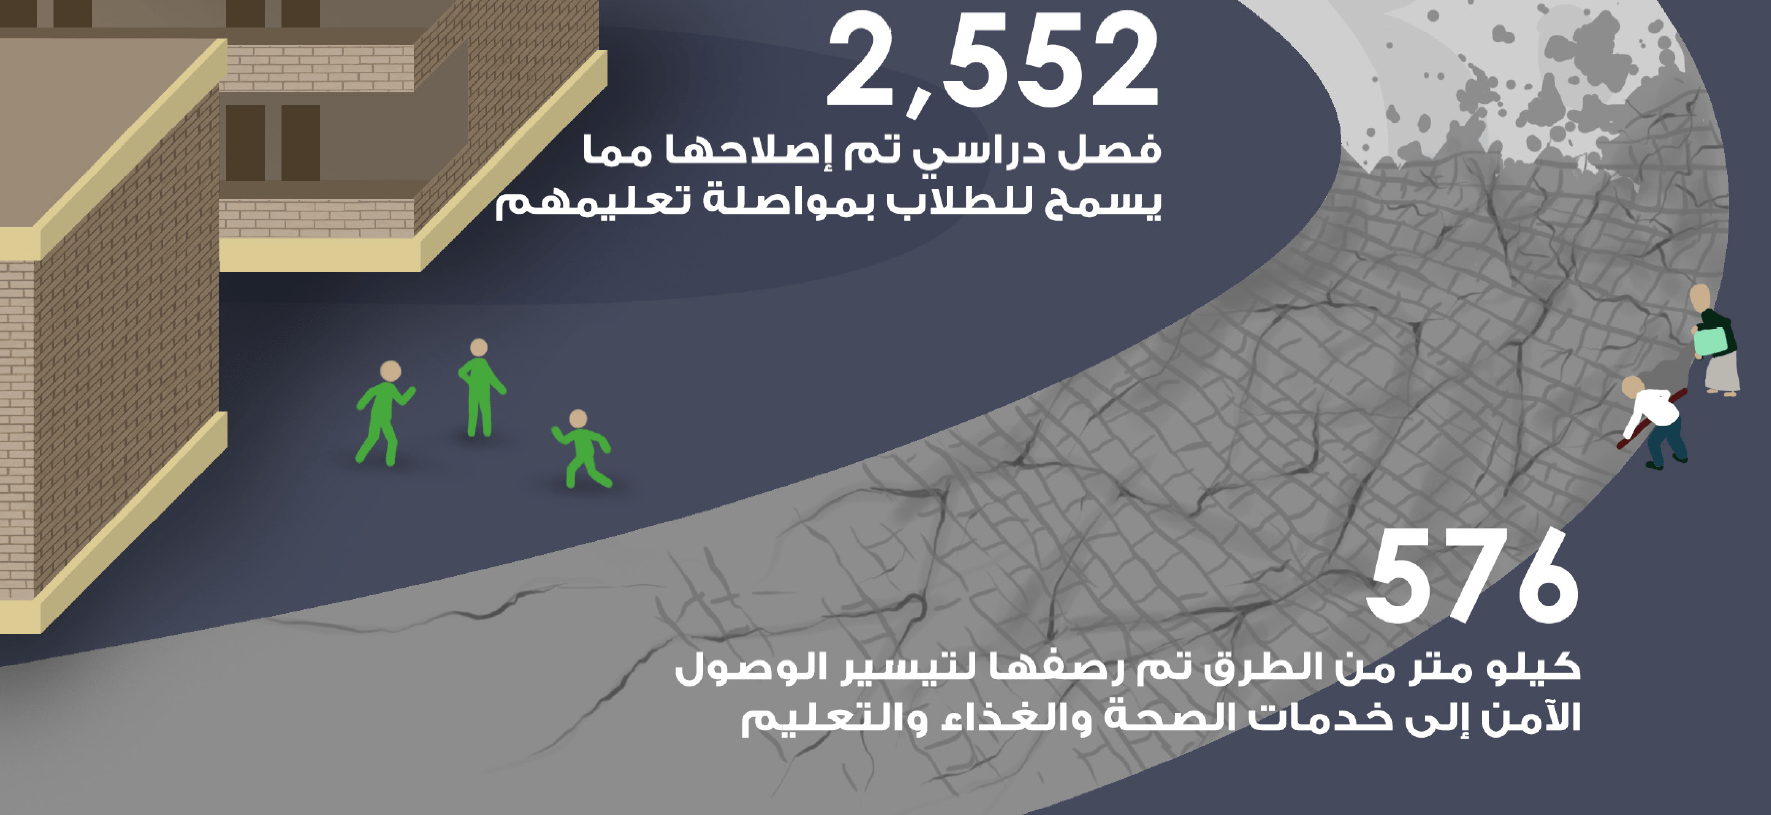 الاستجابة الطارئة تُعلن عوائد 2300 مشروع يمني لتحفيز الاقتصاد